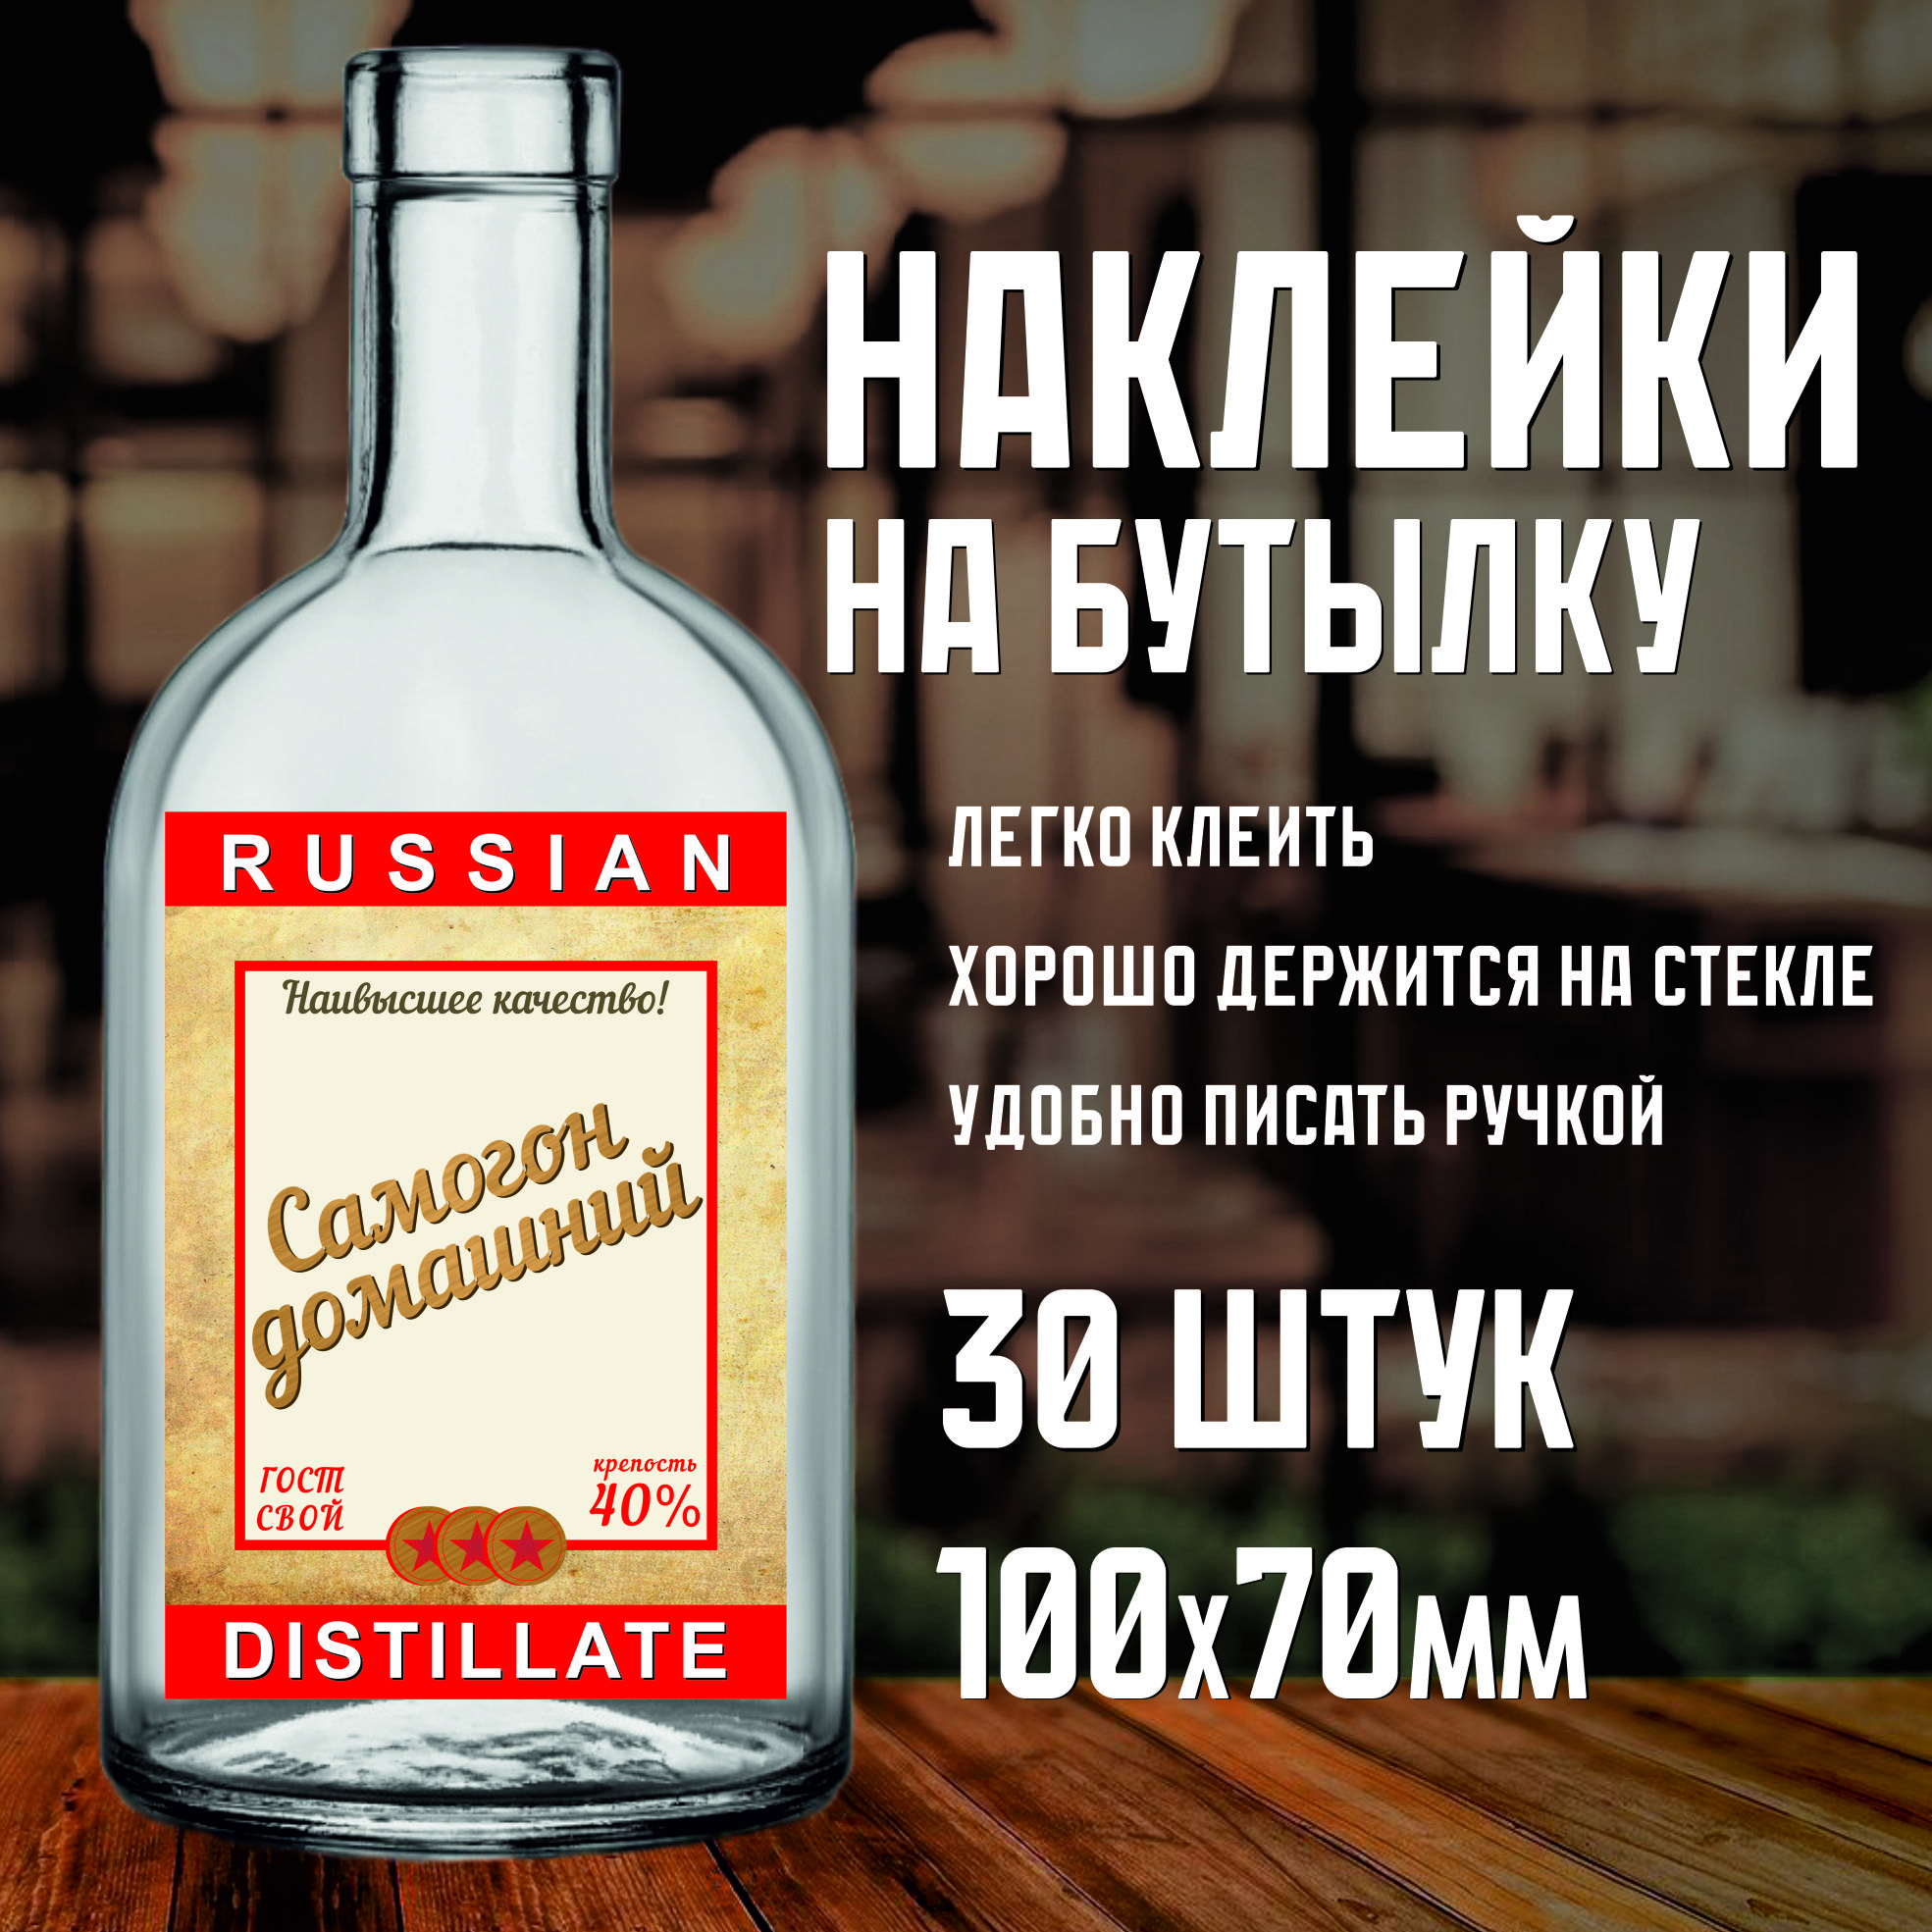 Этикетка(наклейка)набутылку"RussianDistillate",70х100мм,30шт.